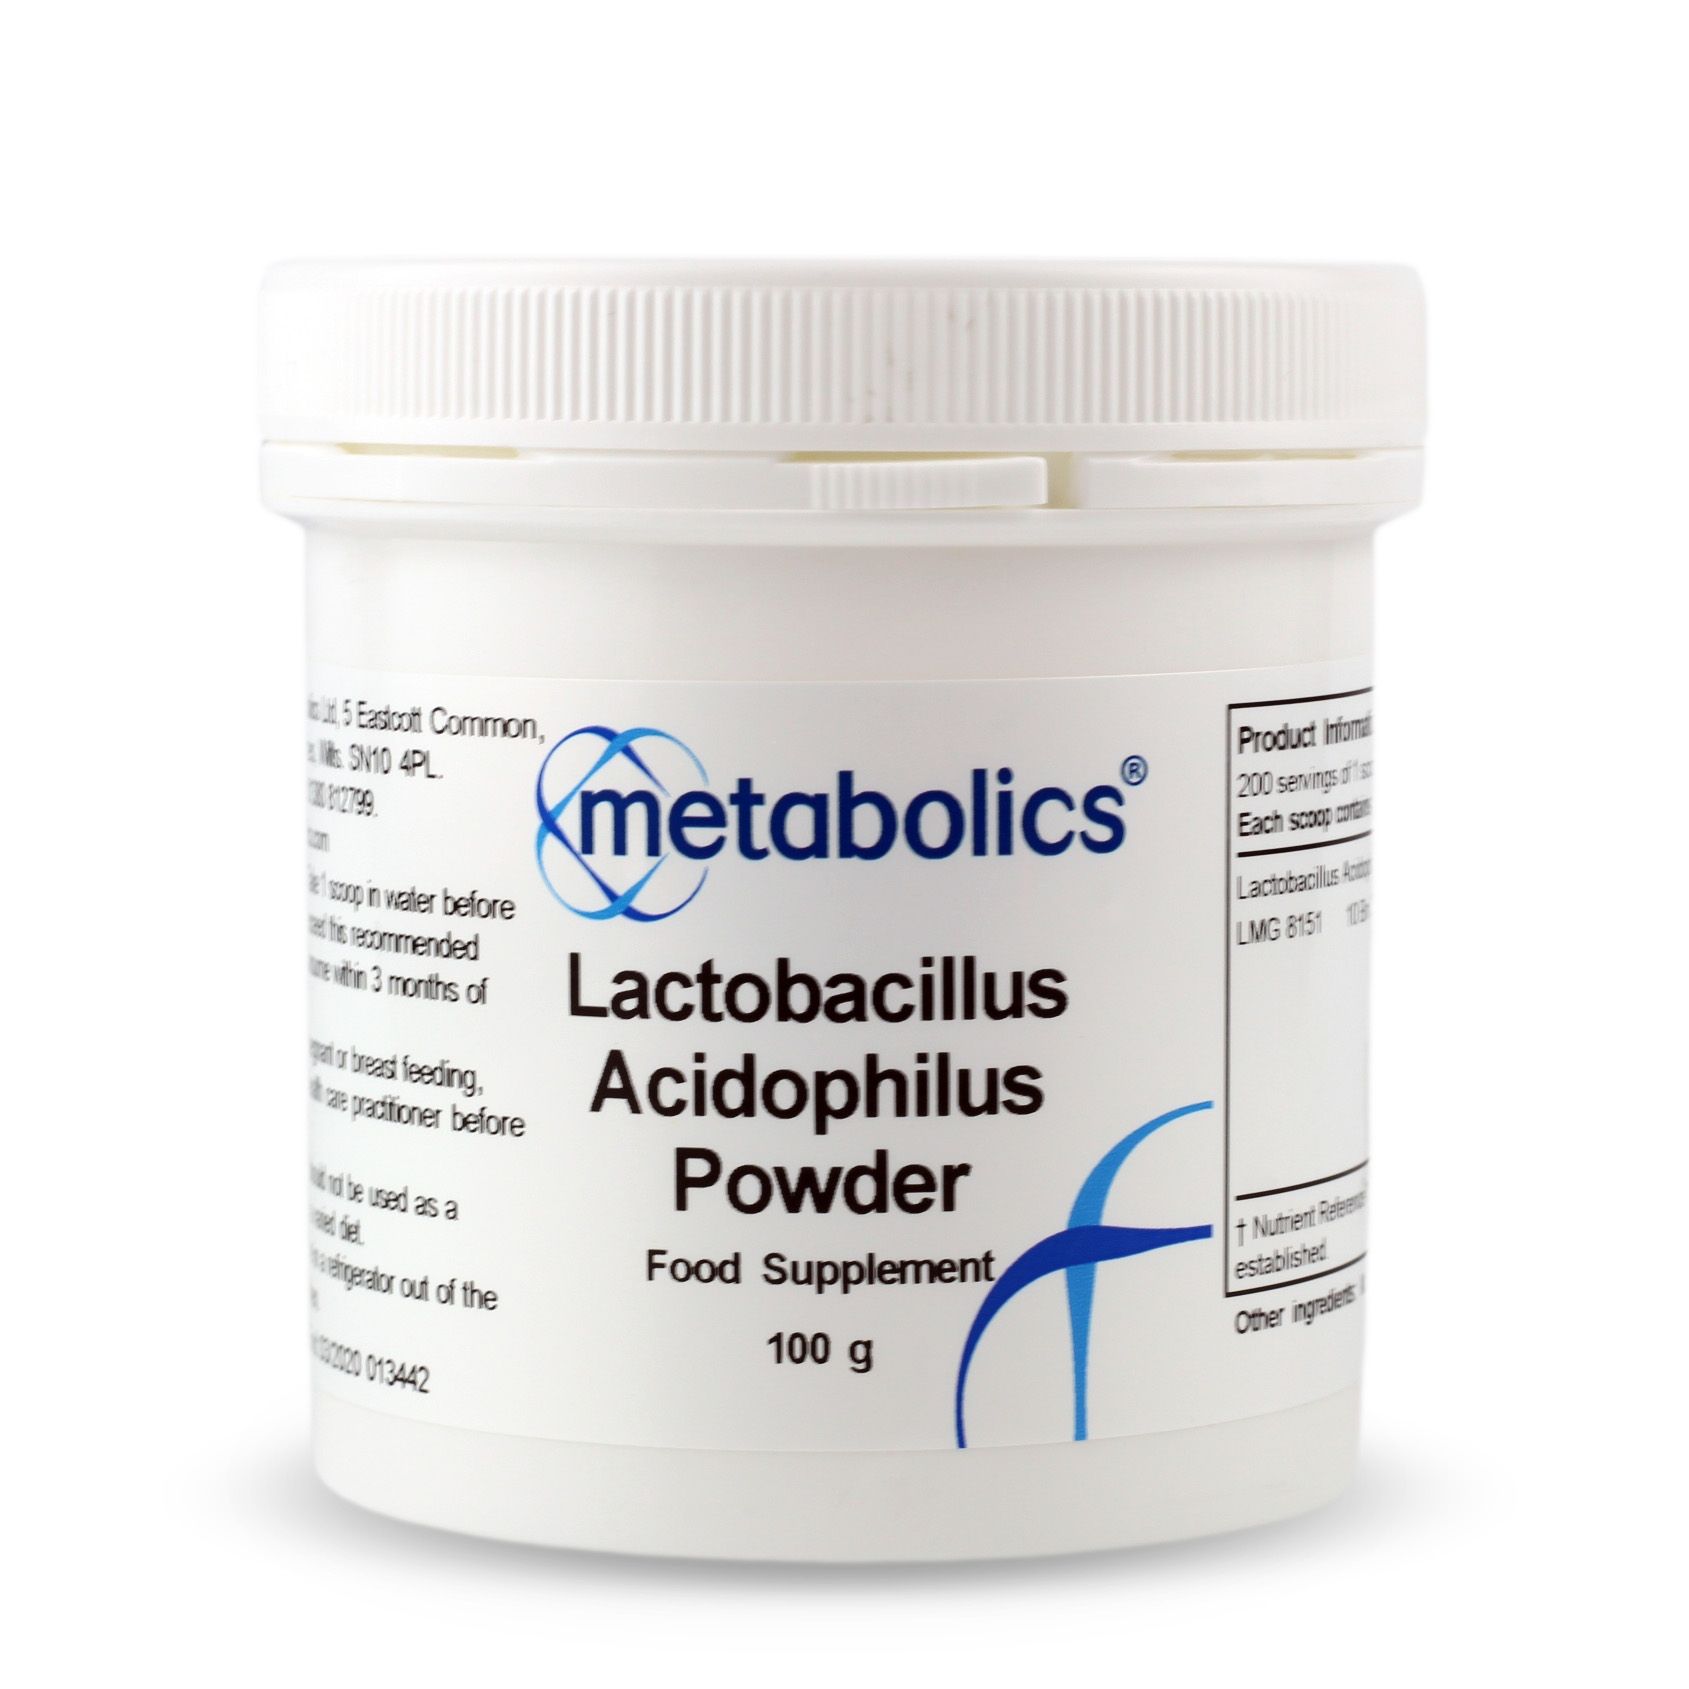 Lactobacillus Acidophilus Powder (100g)